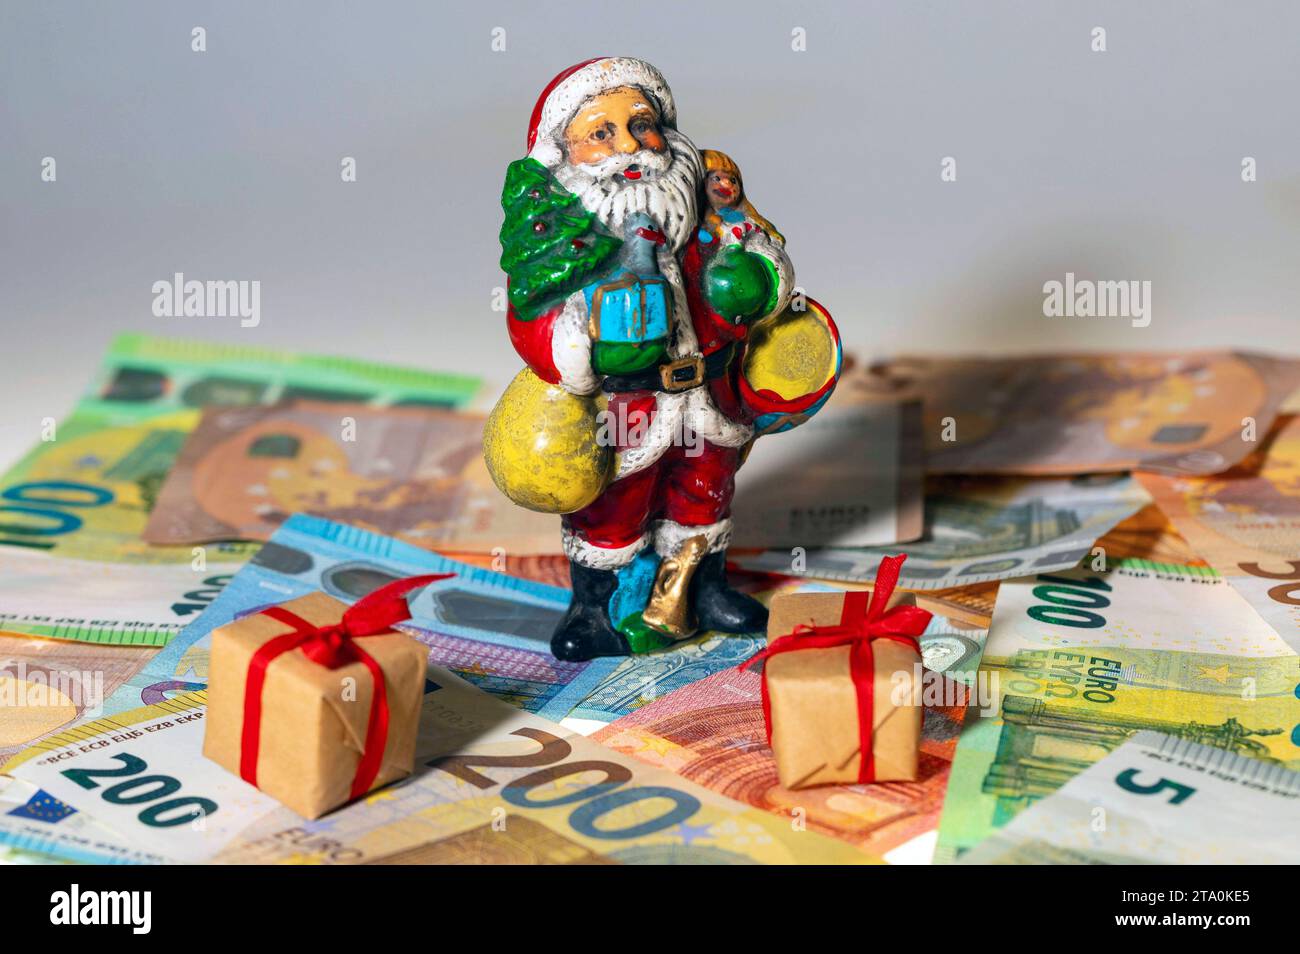 Eine Weihnachtsmann-Figur mit Geschenken steht auf Euro-Banknoten. - Weihnachtsgeld ist ein zusätzliches Entgelt des Arbeitgebers an Seine Arbeitnehmer. Die Höhe des Weihnachtsgeldes, der Zahlungszeitpunkt sowie der Umstand, ob überhaupt Weihnachtsgeld gezahlt wird, sind gesetzlich nicht geregelt. Die Zahlung soll zu den anlässlich des Weihnachtsfestes zusätzlich entstehenden Aufwendungen beitragen. Sybolfoto, Symbolbild **** Una cifra di Babbo Natale con regali è un pagamento aggiuntivo da parte del datore di lavoro ai suoi dipendenti per l'importo del bonus di Natale, th Foto Stock